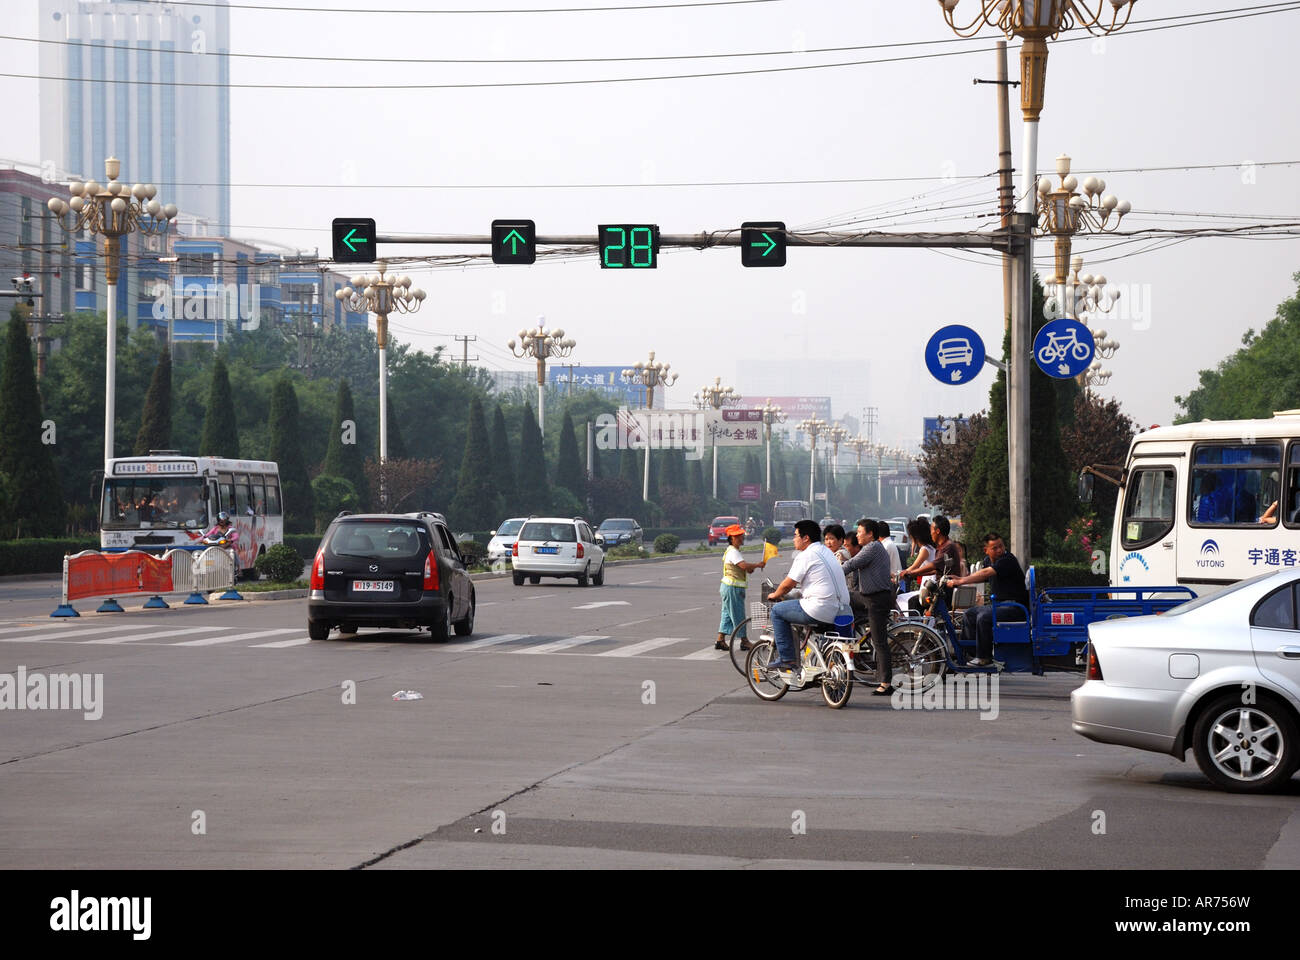 Signalisation routière par visiible à rebours jusqu'à quand ils seront suivant changer la Chine Banque D'Images